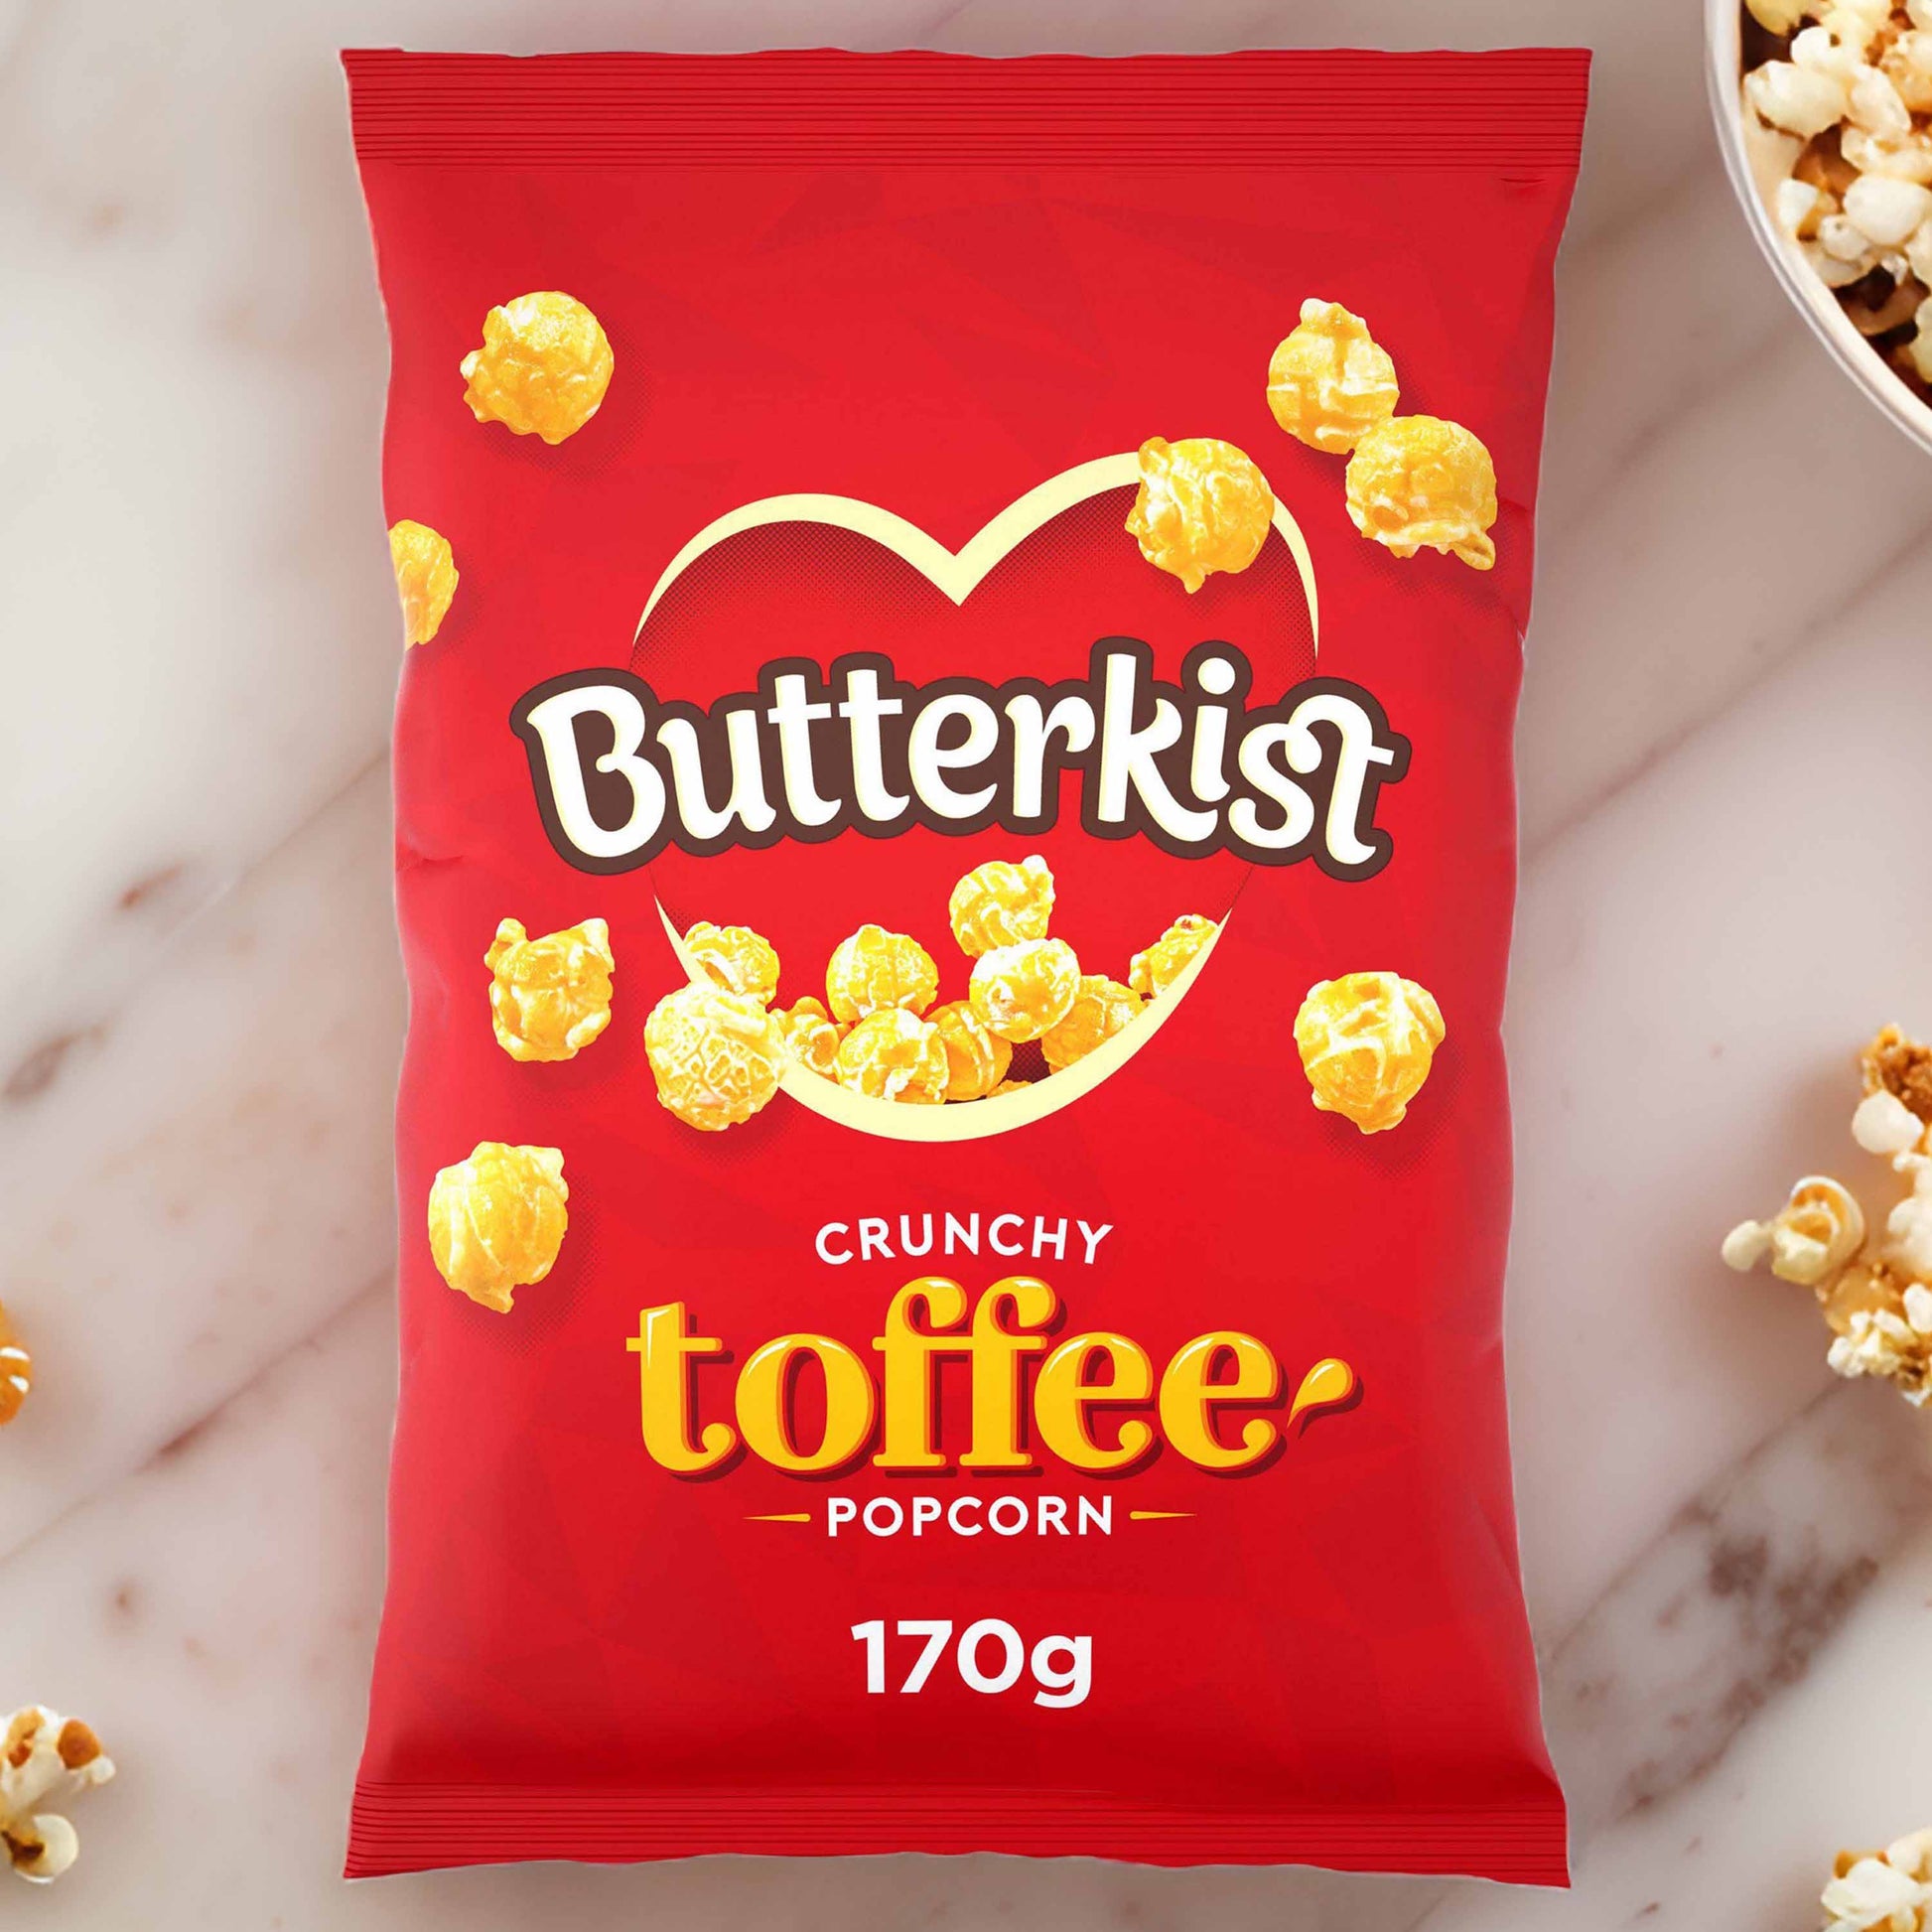 Butterkist Crunchy Toffee Popcorn - 170g - Classic British Popcorn